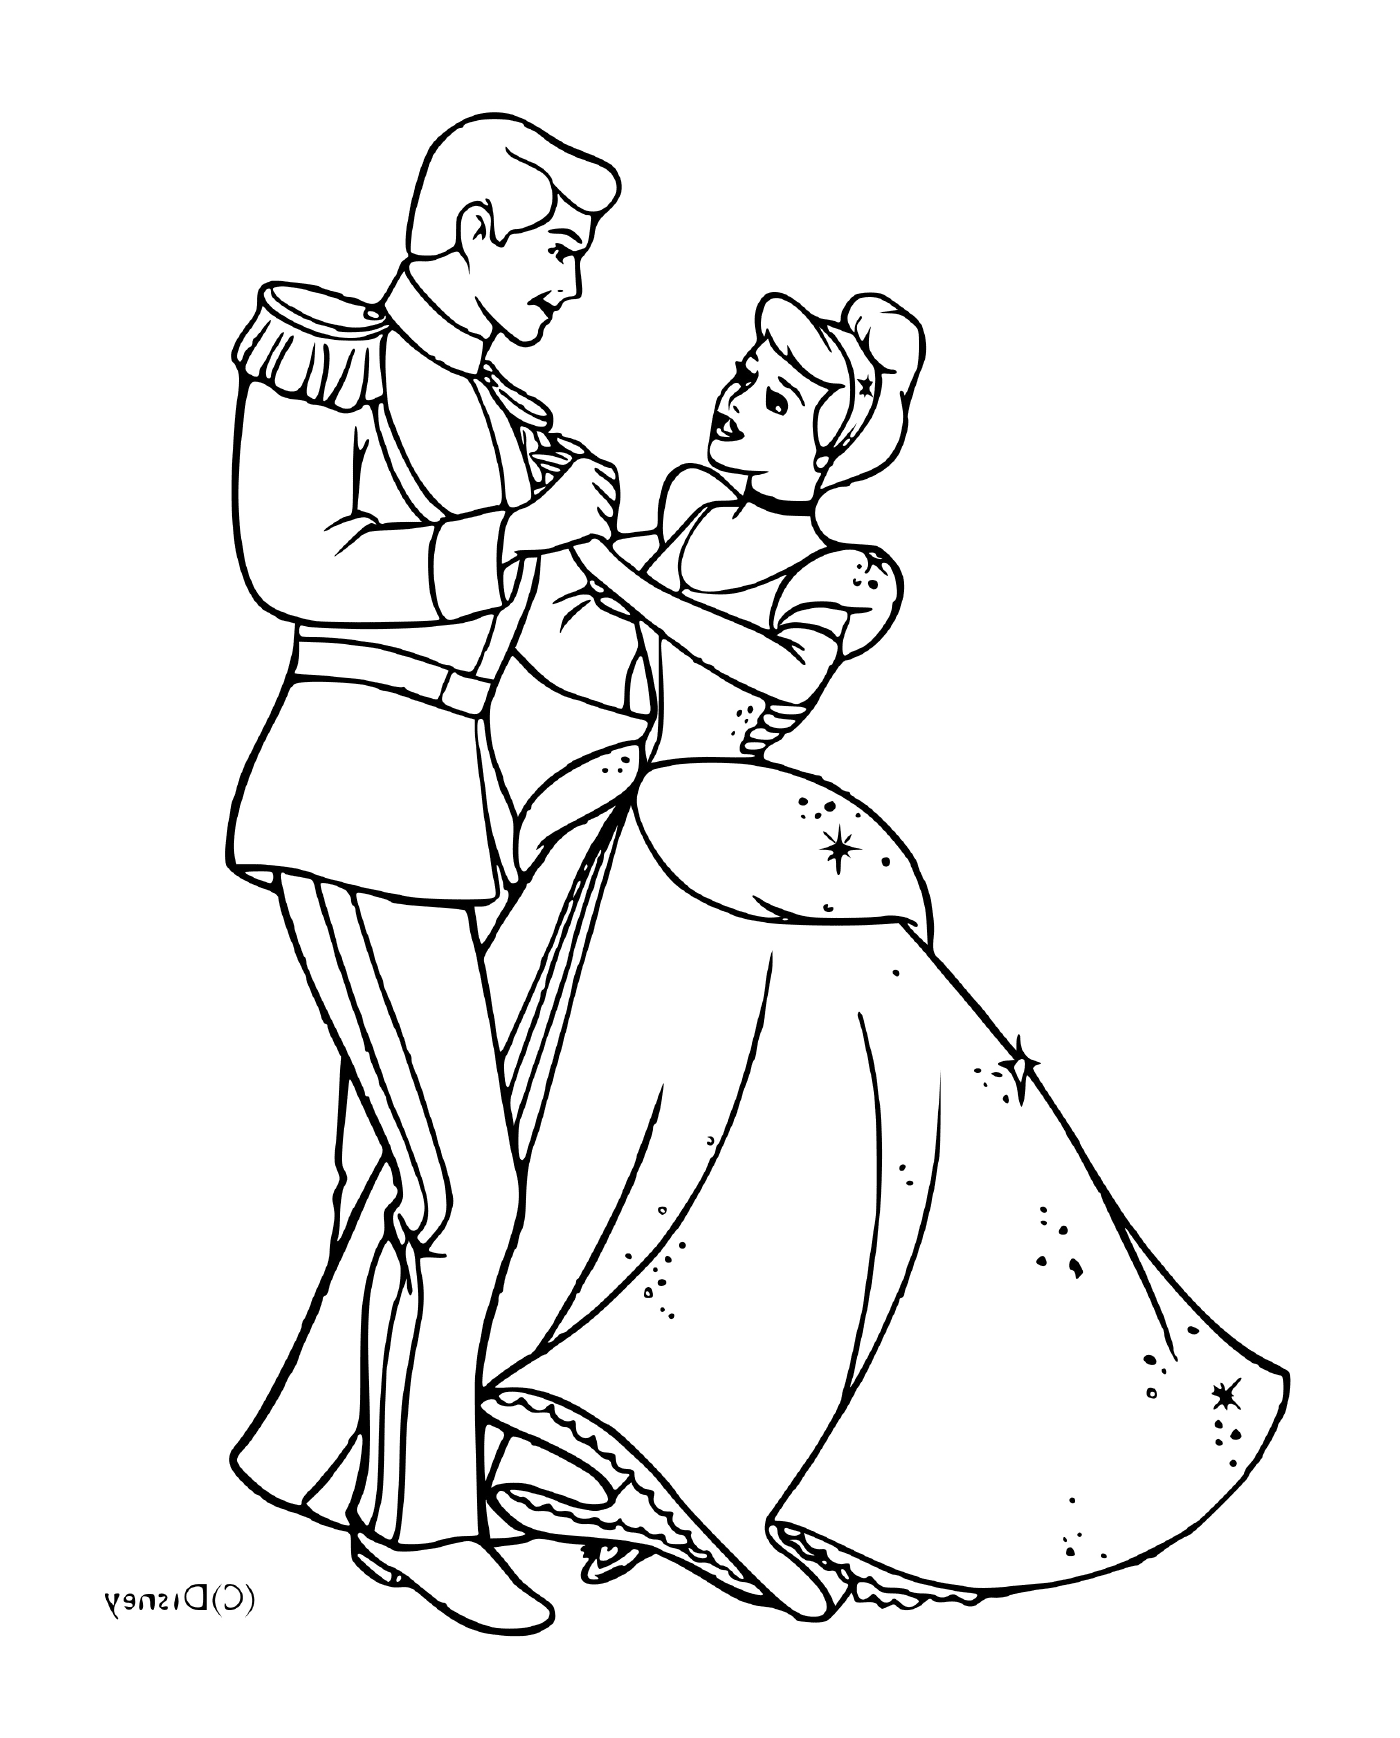  सेरला और उसकी सुंदर राजकुमारी एक साथ नाच रहे हैं 